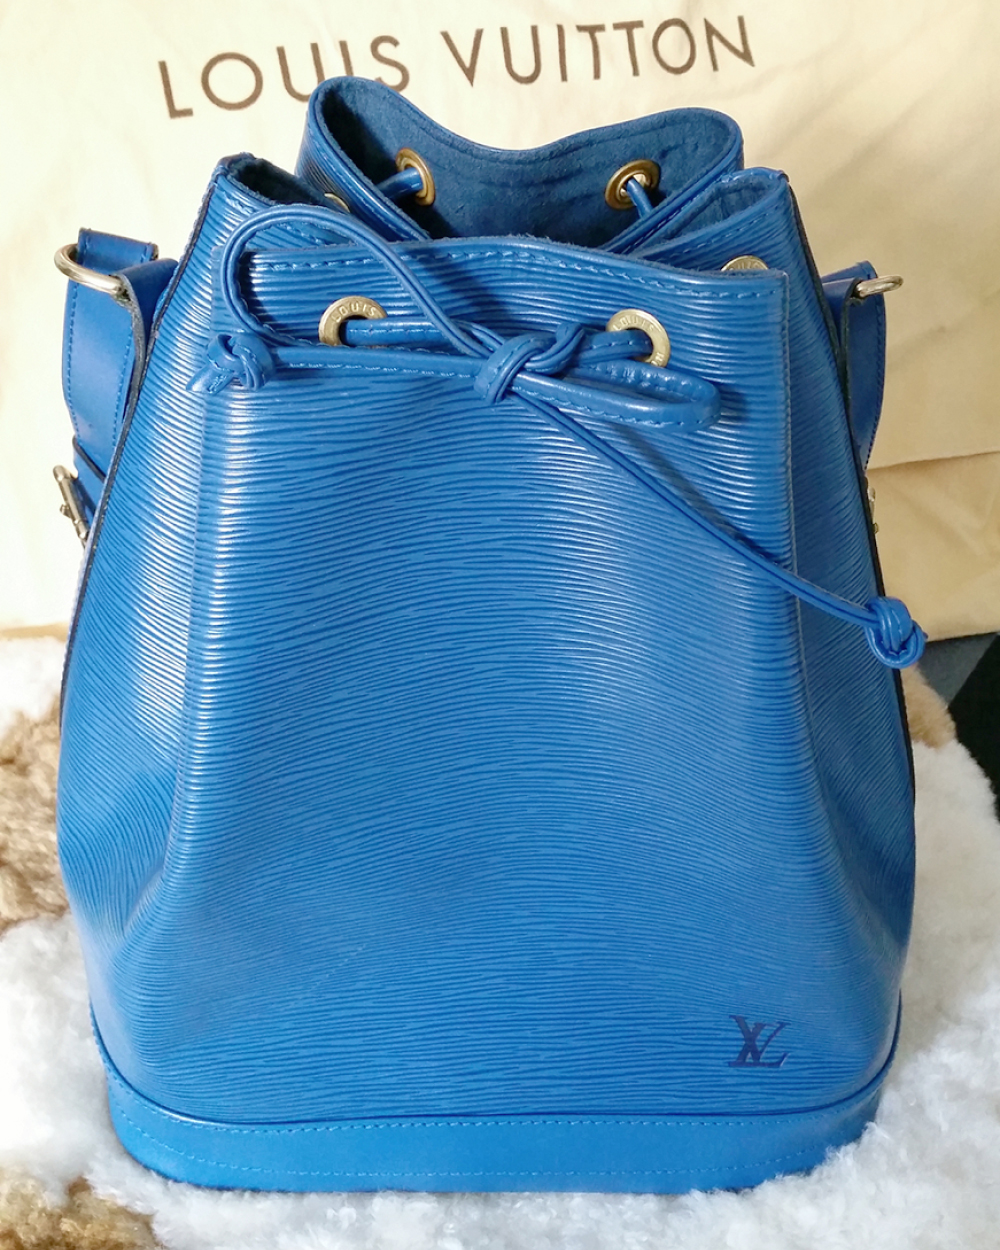 Louis Vuitton bag, $705